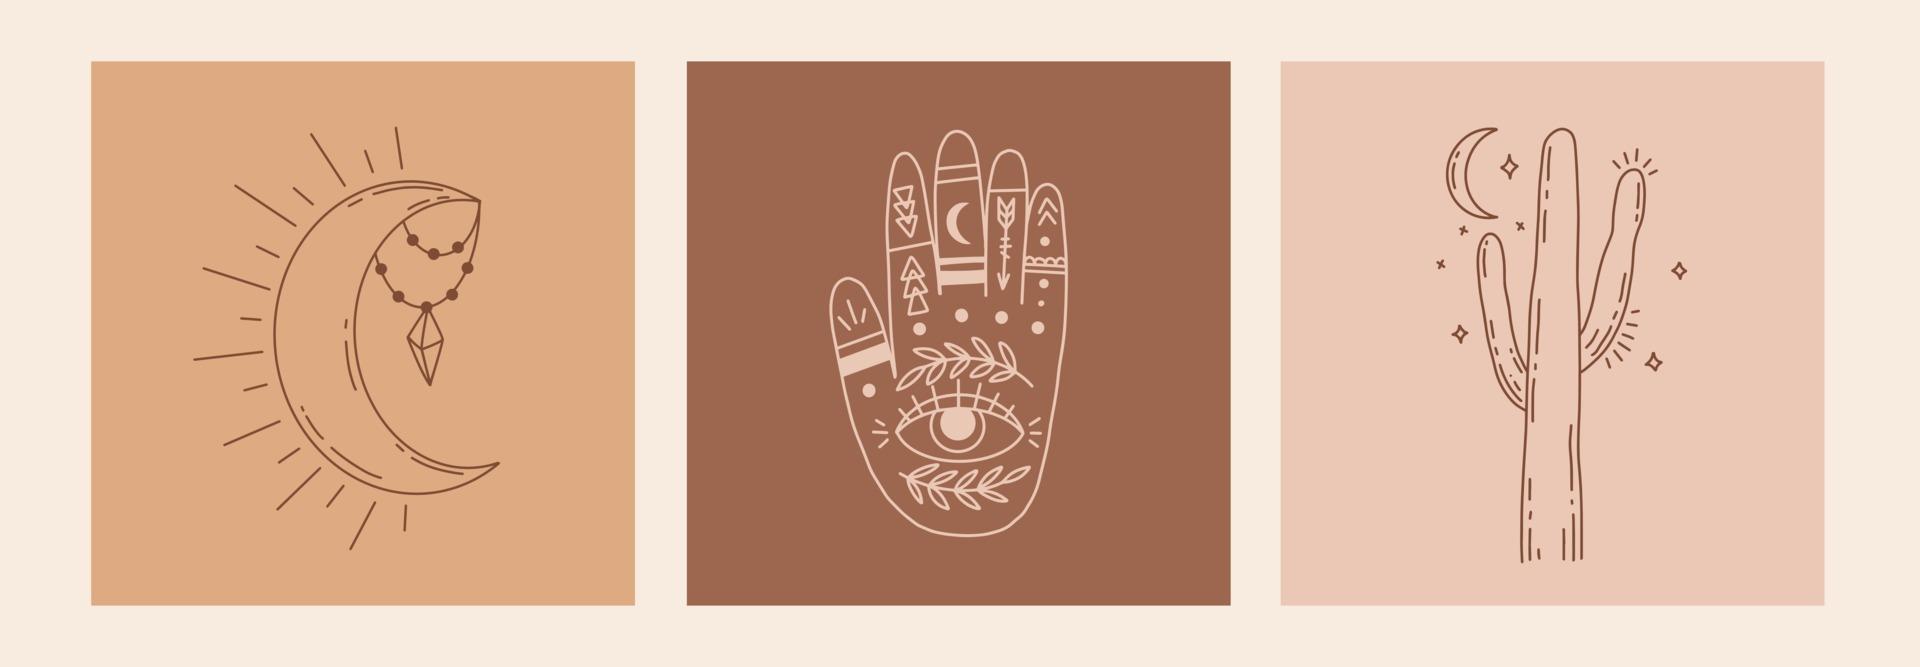 boho mystic doodle conjunto esotérico. cartel de arte de línea mágica con manos, cactus, luna y estrellas. Ilustración de vector moderno bohemio